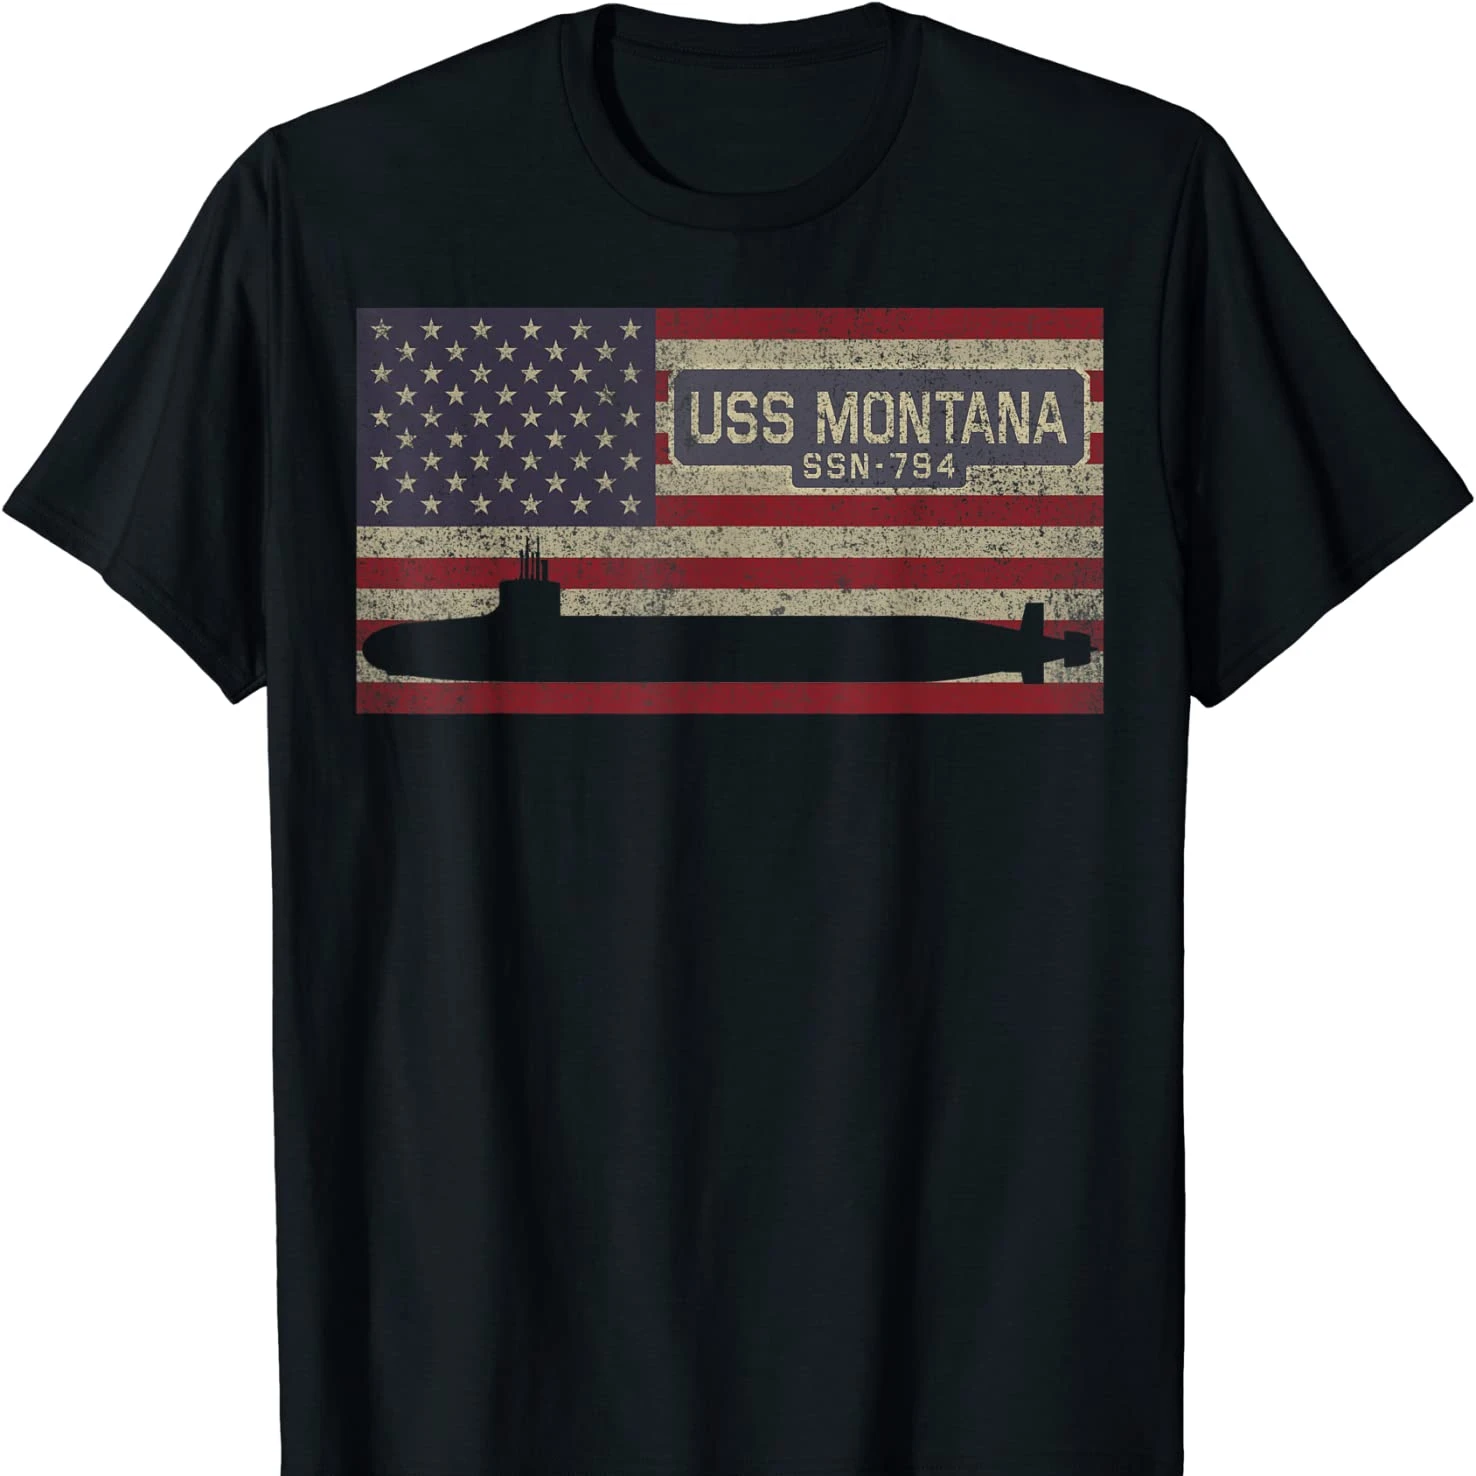 

Футболка с американским флагом США Монтана Новинка, Мужская футболка из 100% хлопка с коротким рукавом и круглым вырезом, повседневный мужской топ